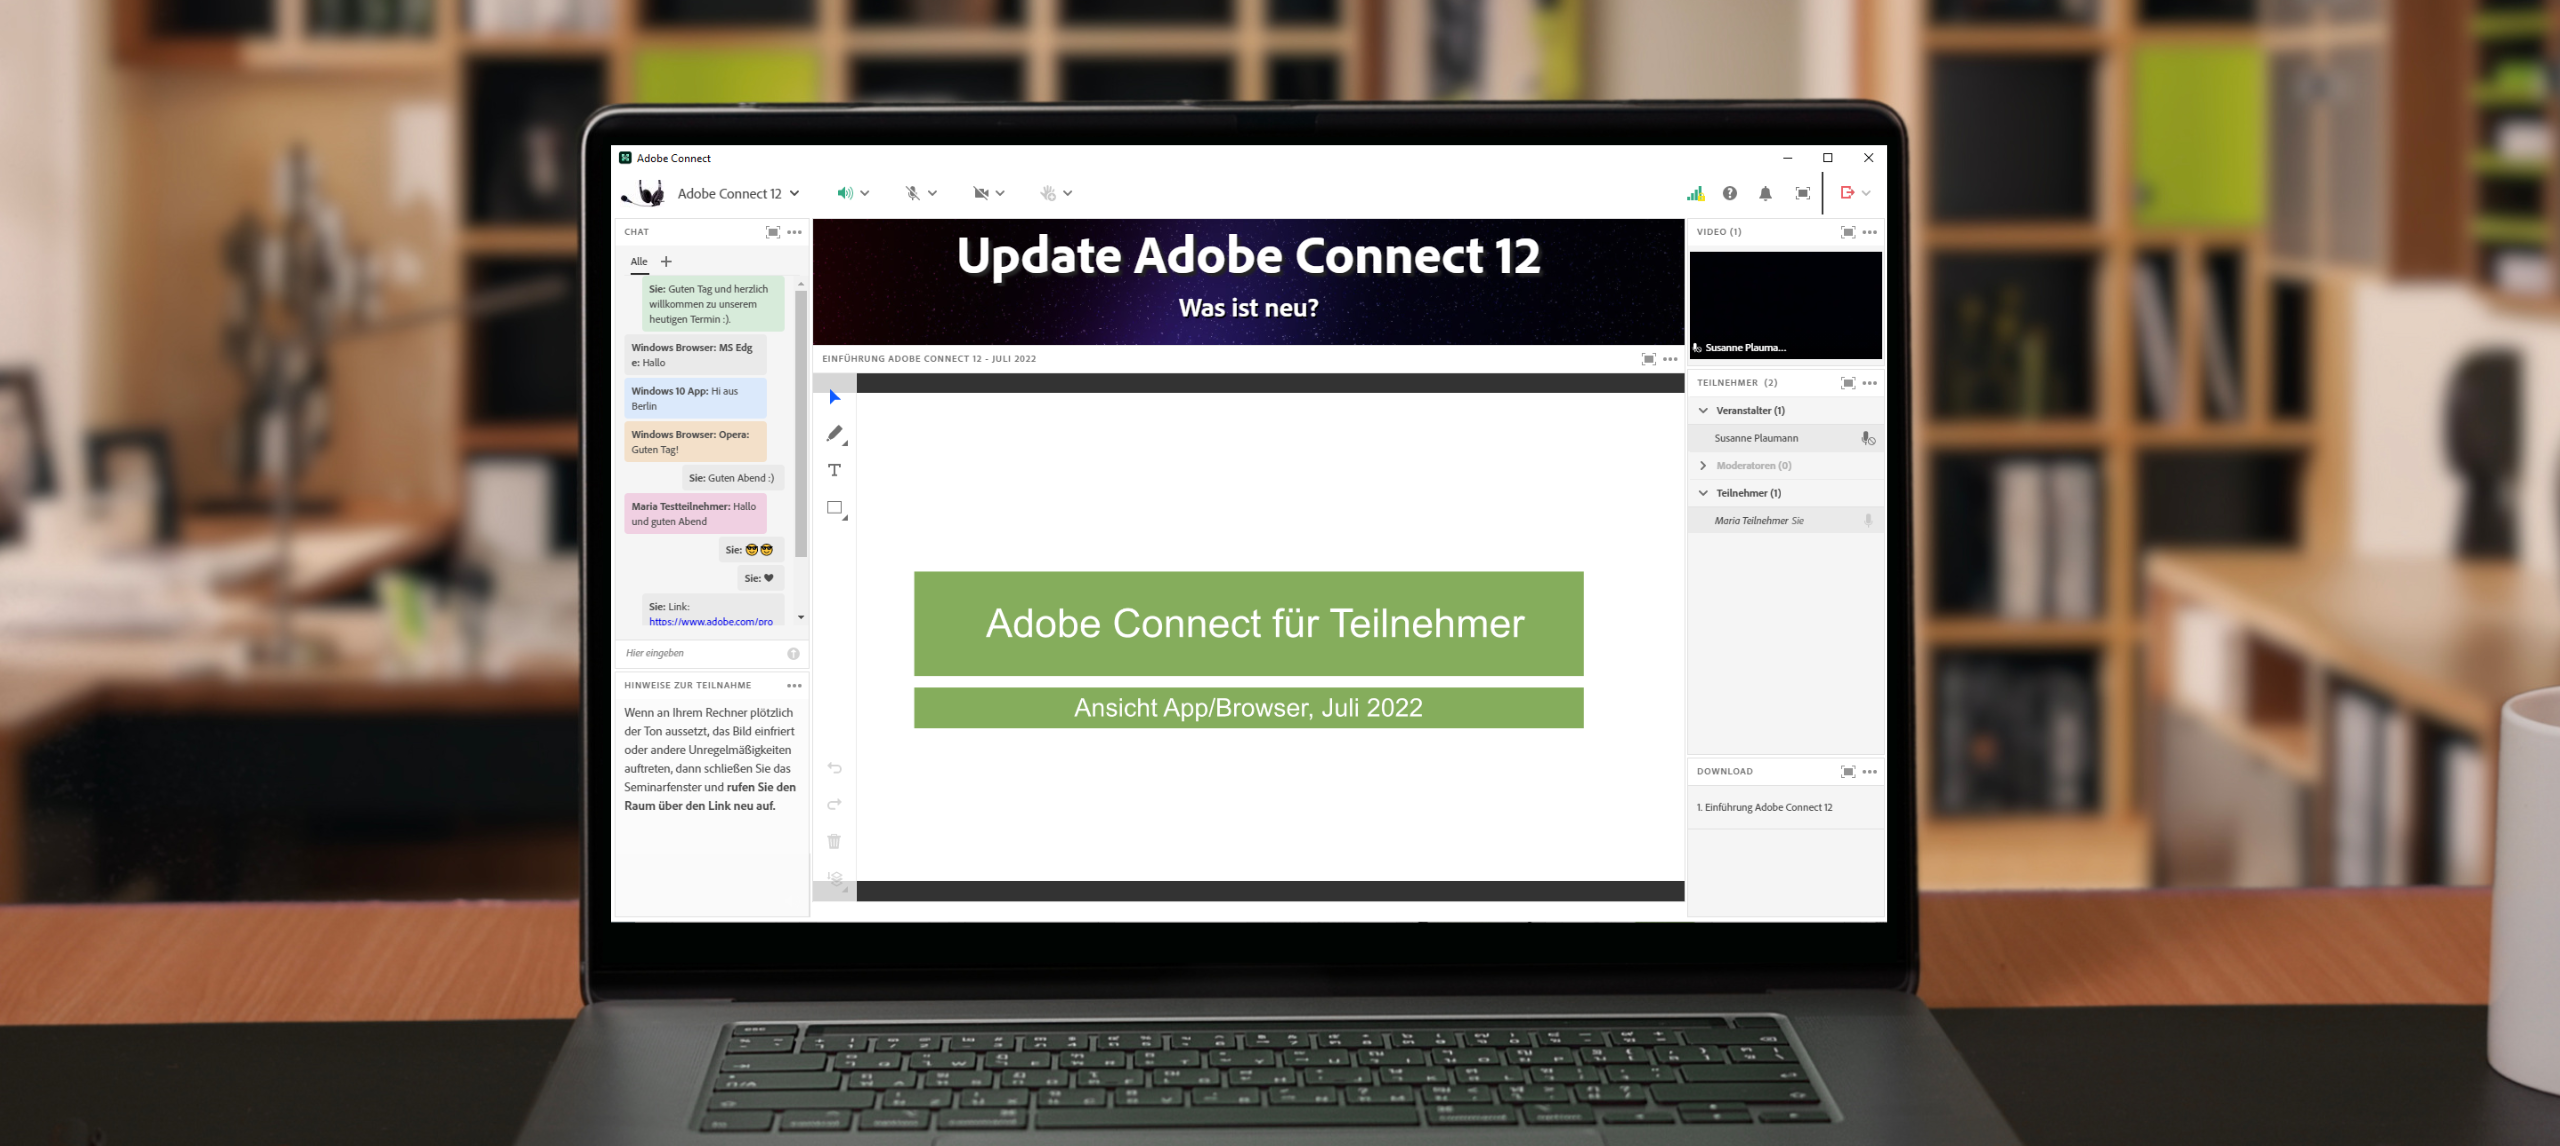 Update Adobe Connect 12 - Was ist neu?